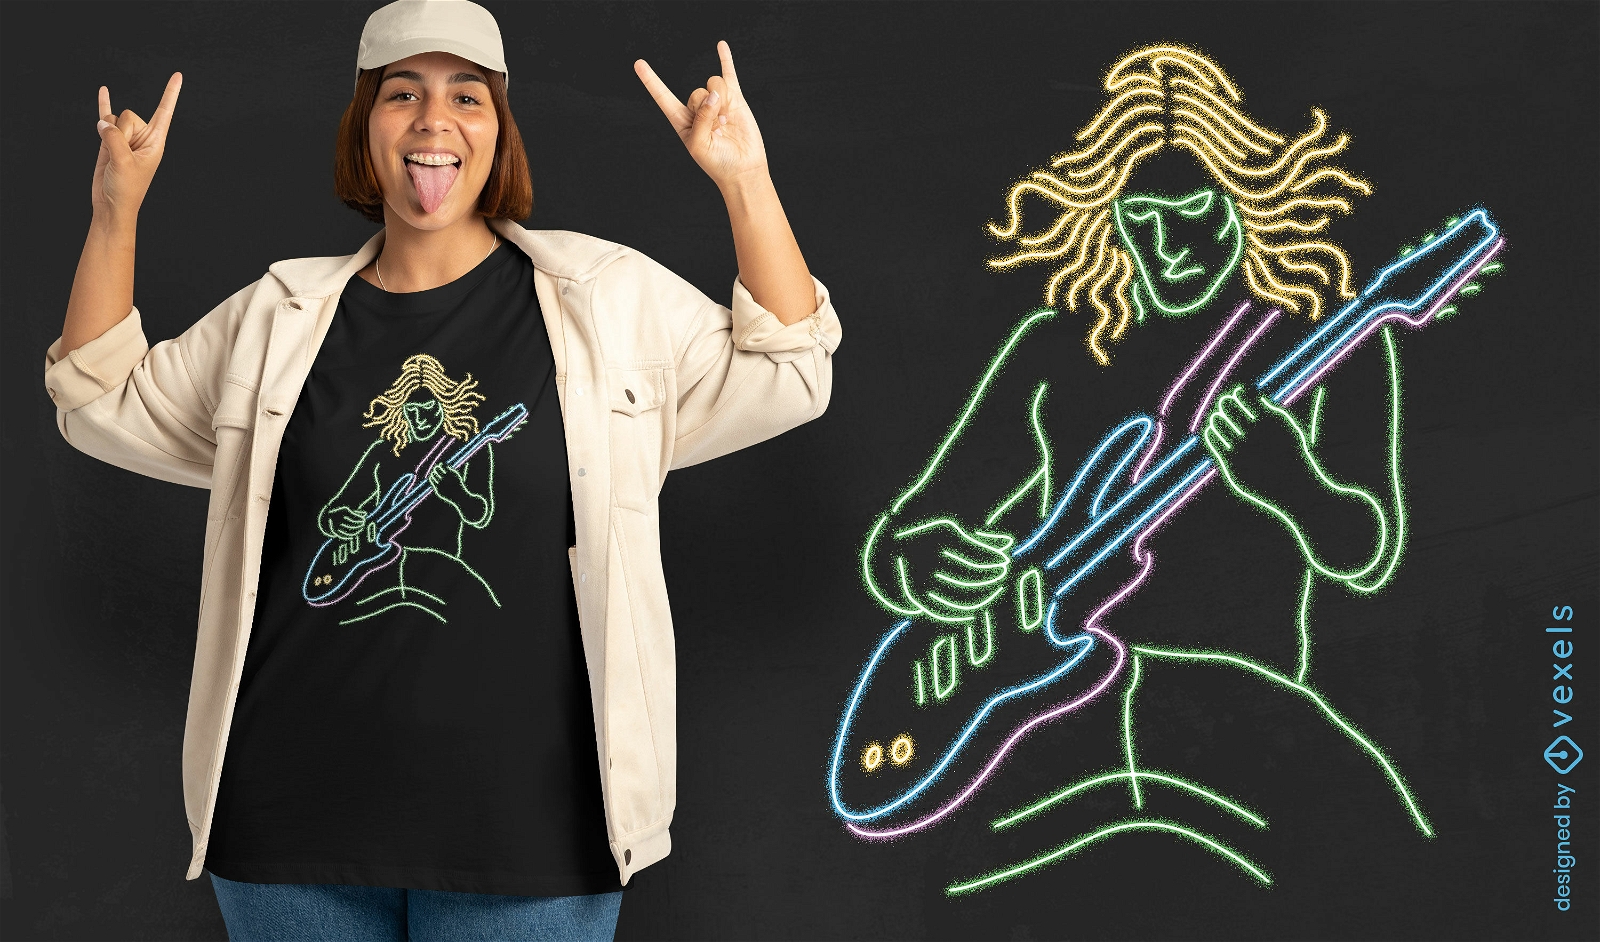 Neon-Rock-Gitarristen-T-Shirt-Design